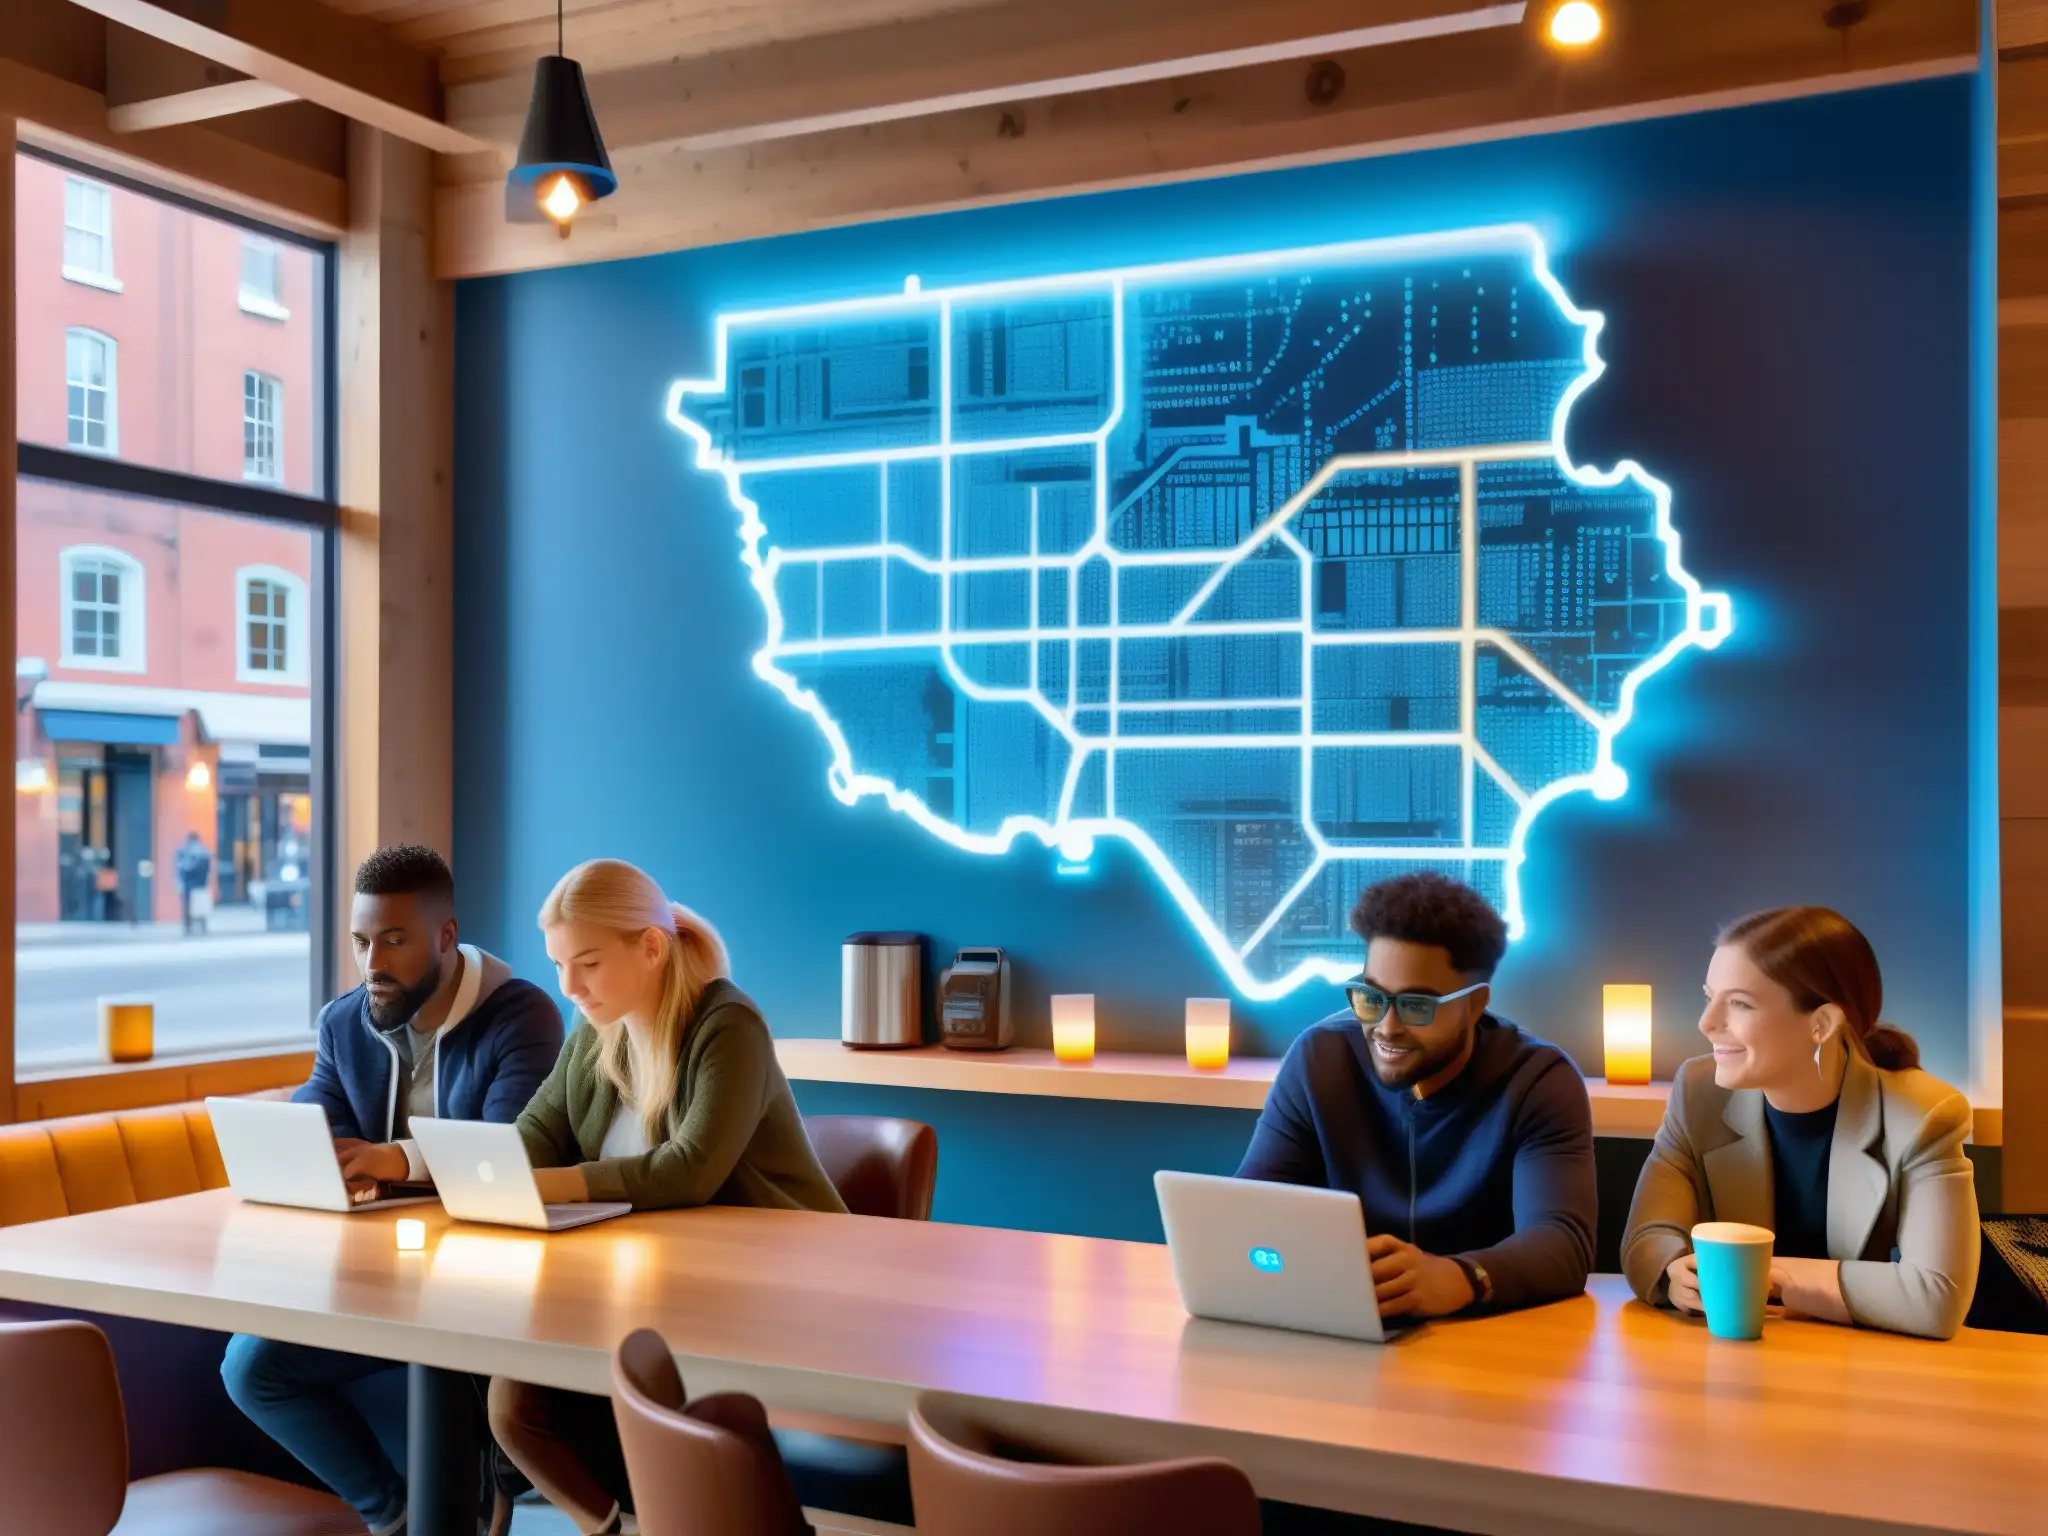 Un ambiente moderno en un café, con personas conectadas a dispositivos electrónicos y un mapa de la ciudad con redes WiFi y Bluetooth